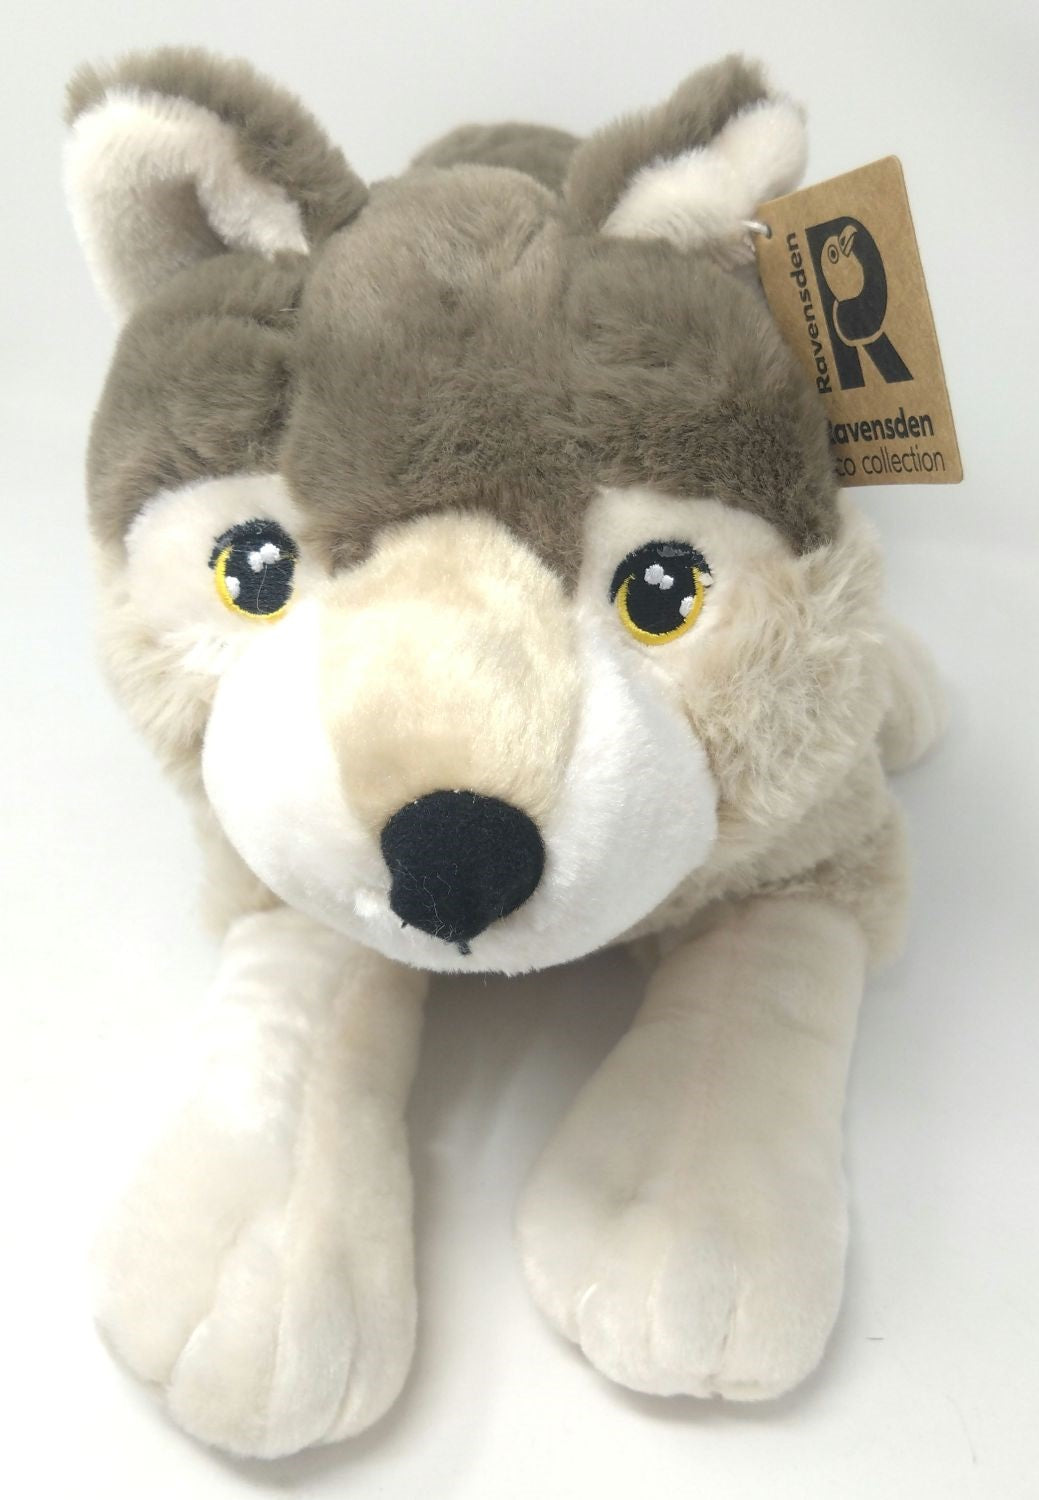 Ravensden Soft Toy Wolf 45cm